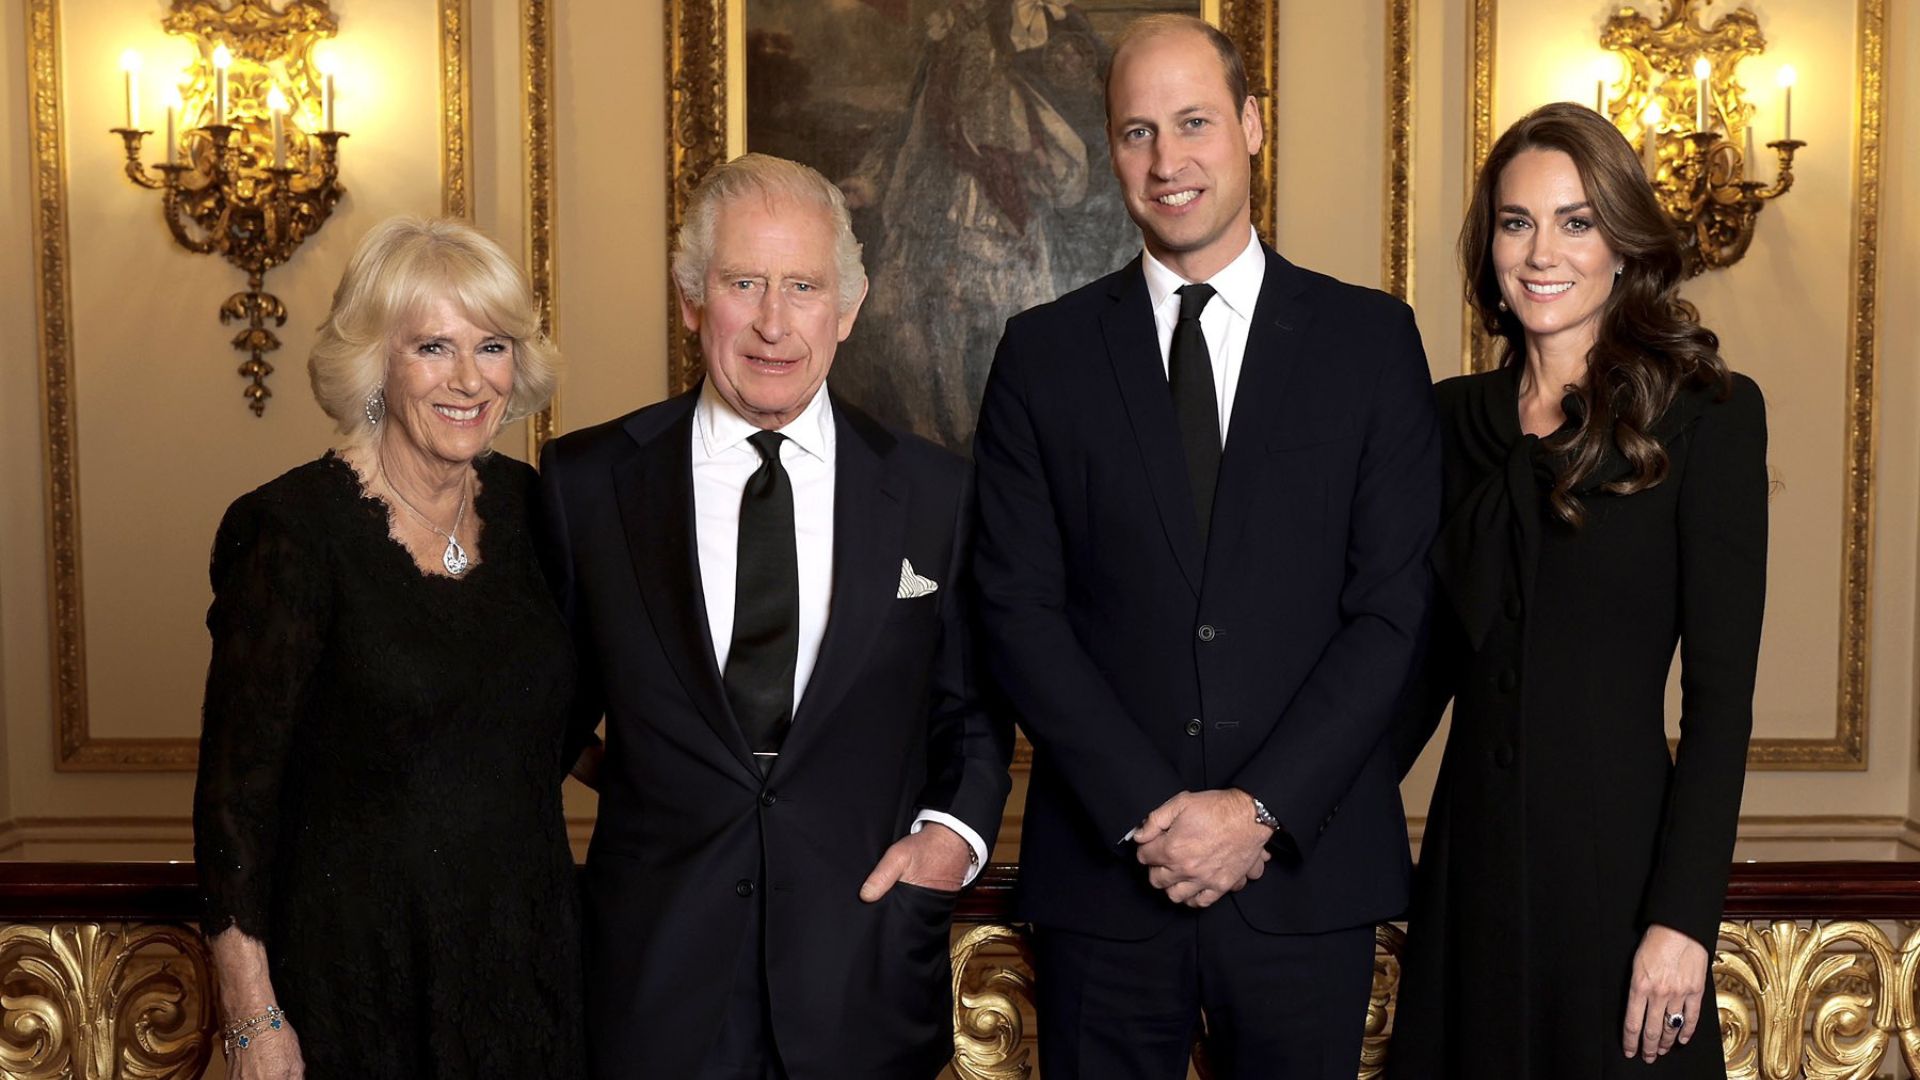 El significado oculto del primer posado oficial del Rey Carlos III junto a Camilla, Guillermo y Kate